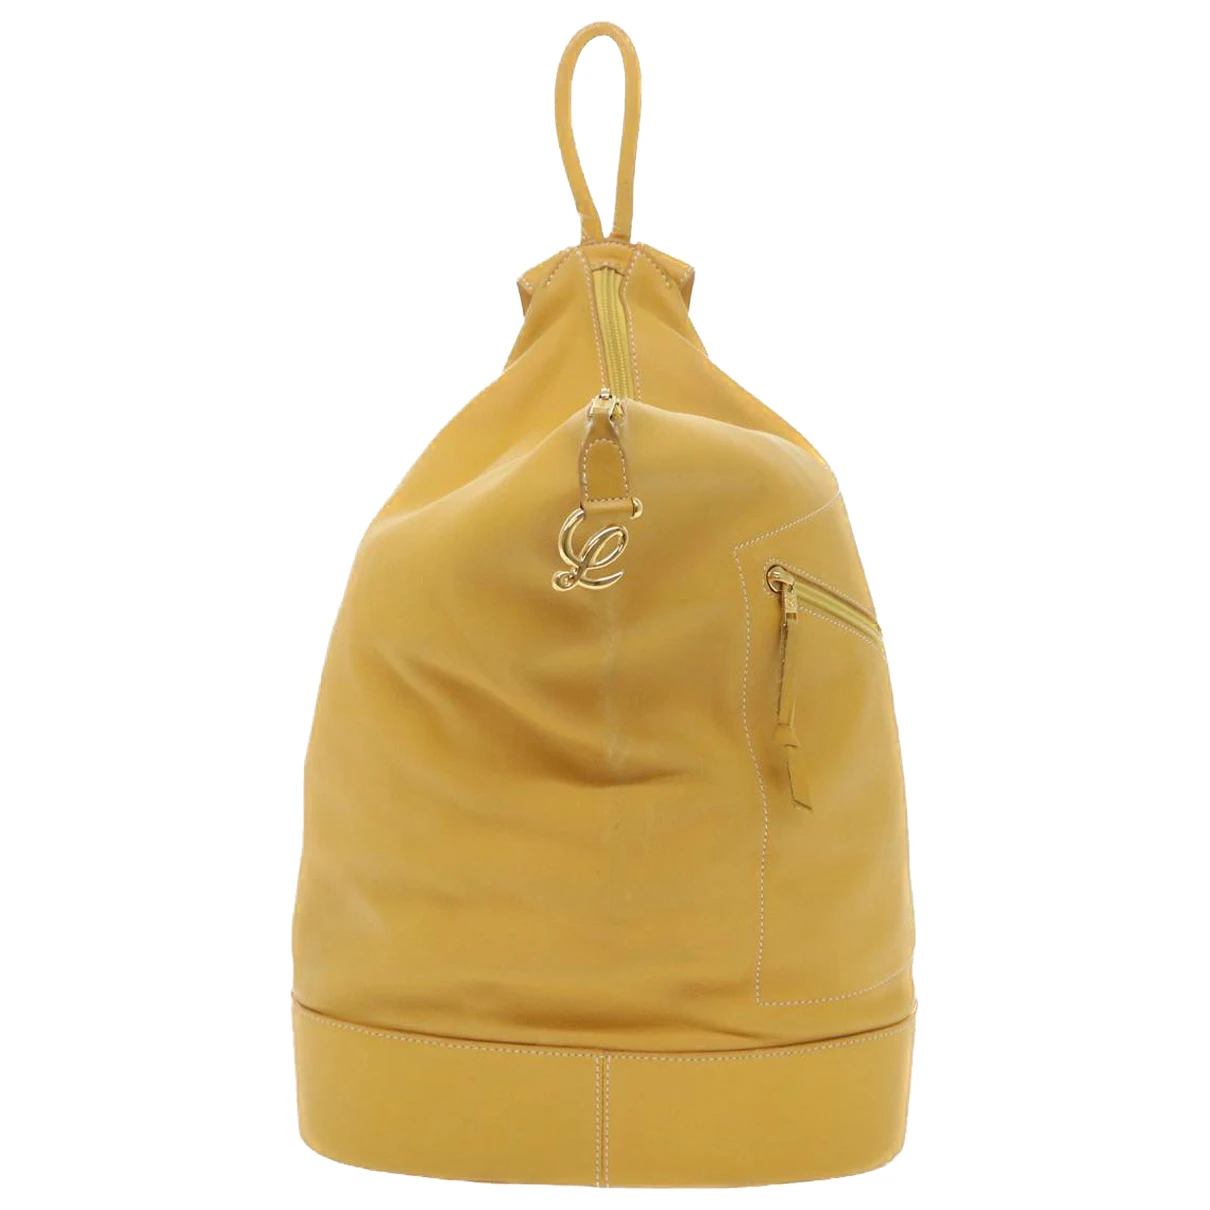 Pre-owned Loewe Leather Handbag In Yellow